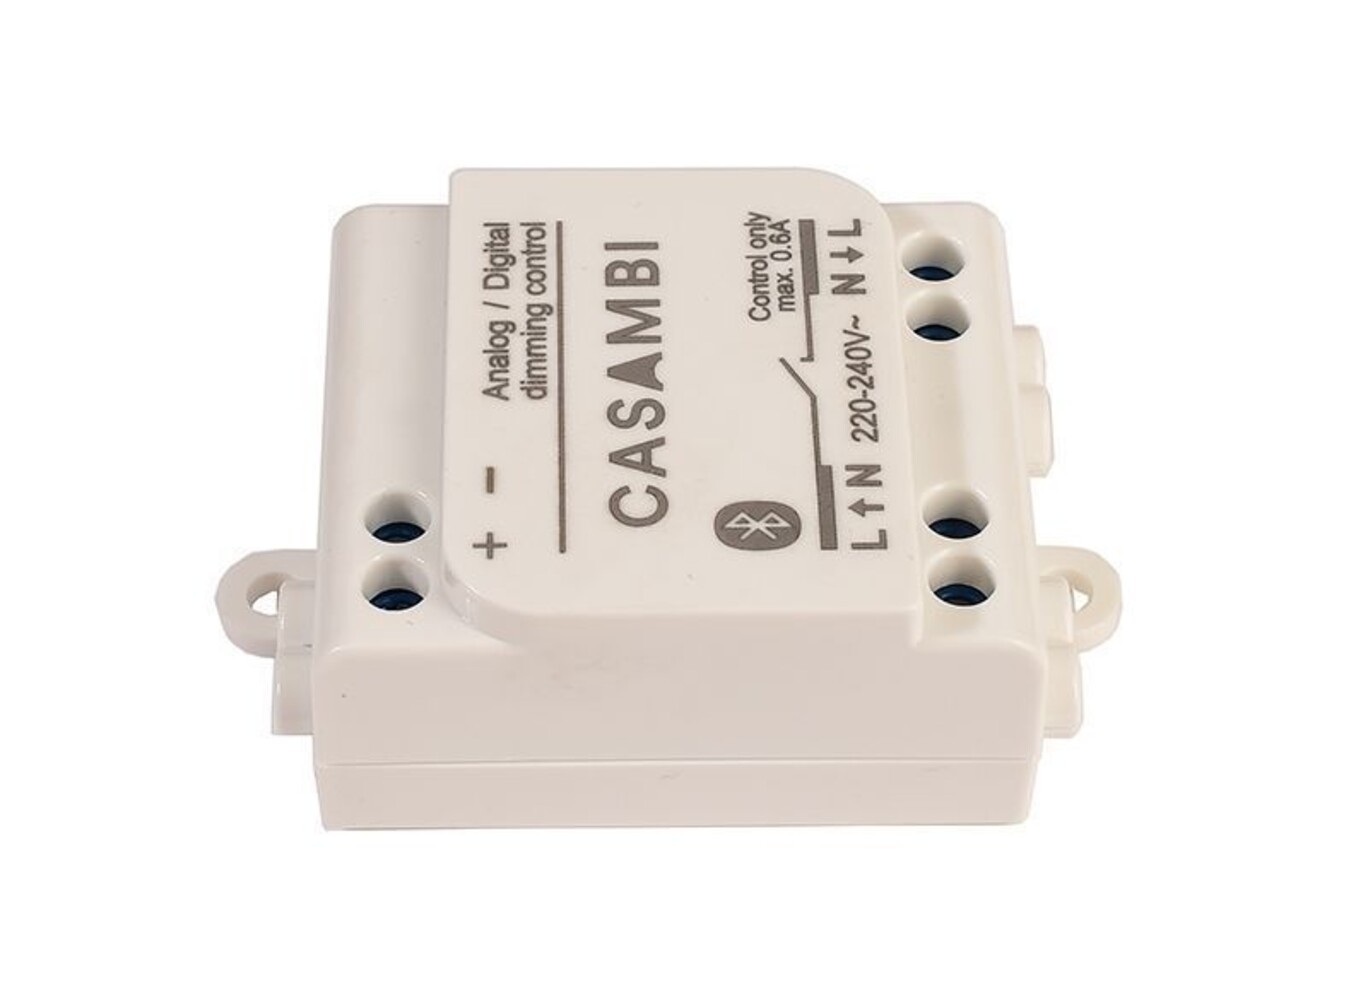 Hochwertiger und zuverlässiger Bluetooth Controller von Casambi, dimmbar und energieeffizient